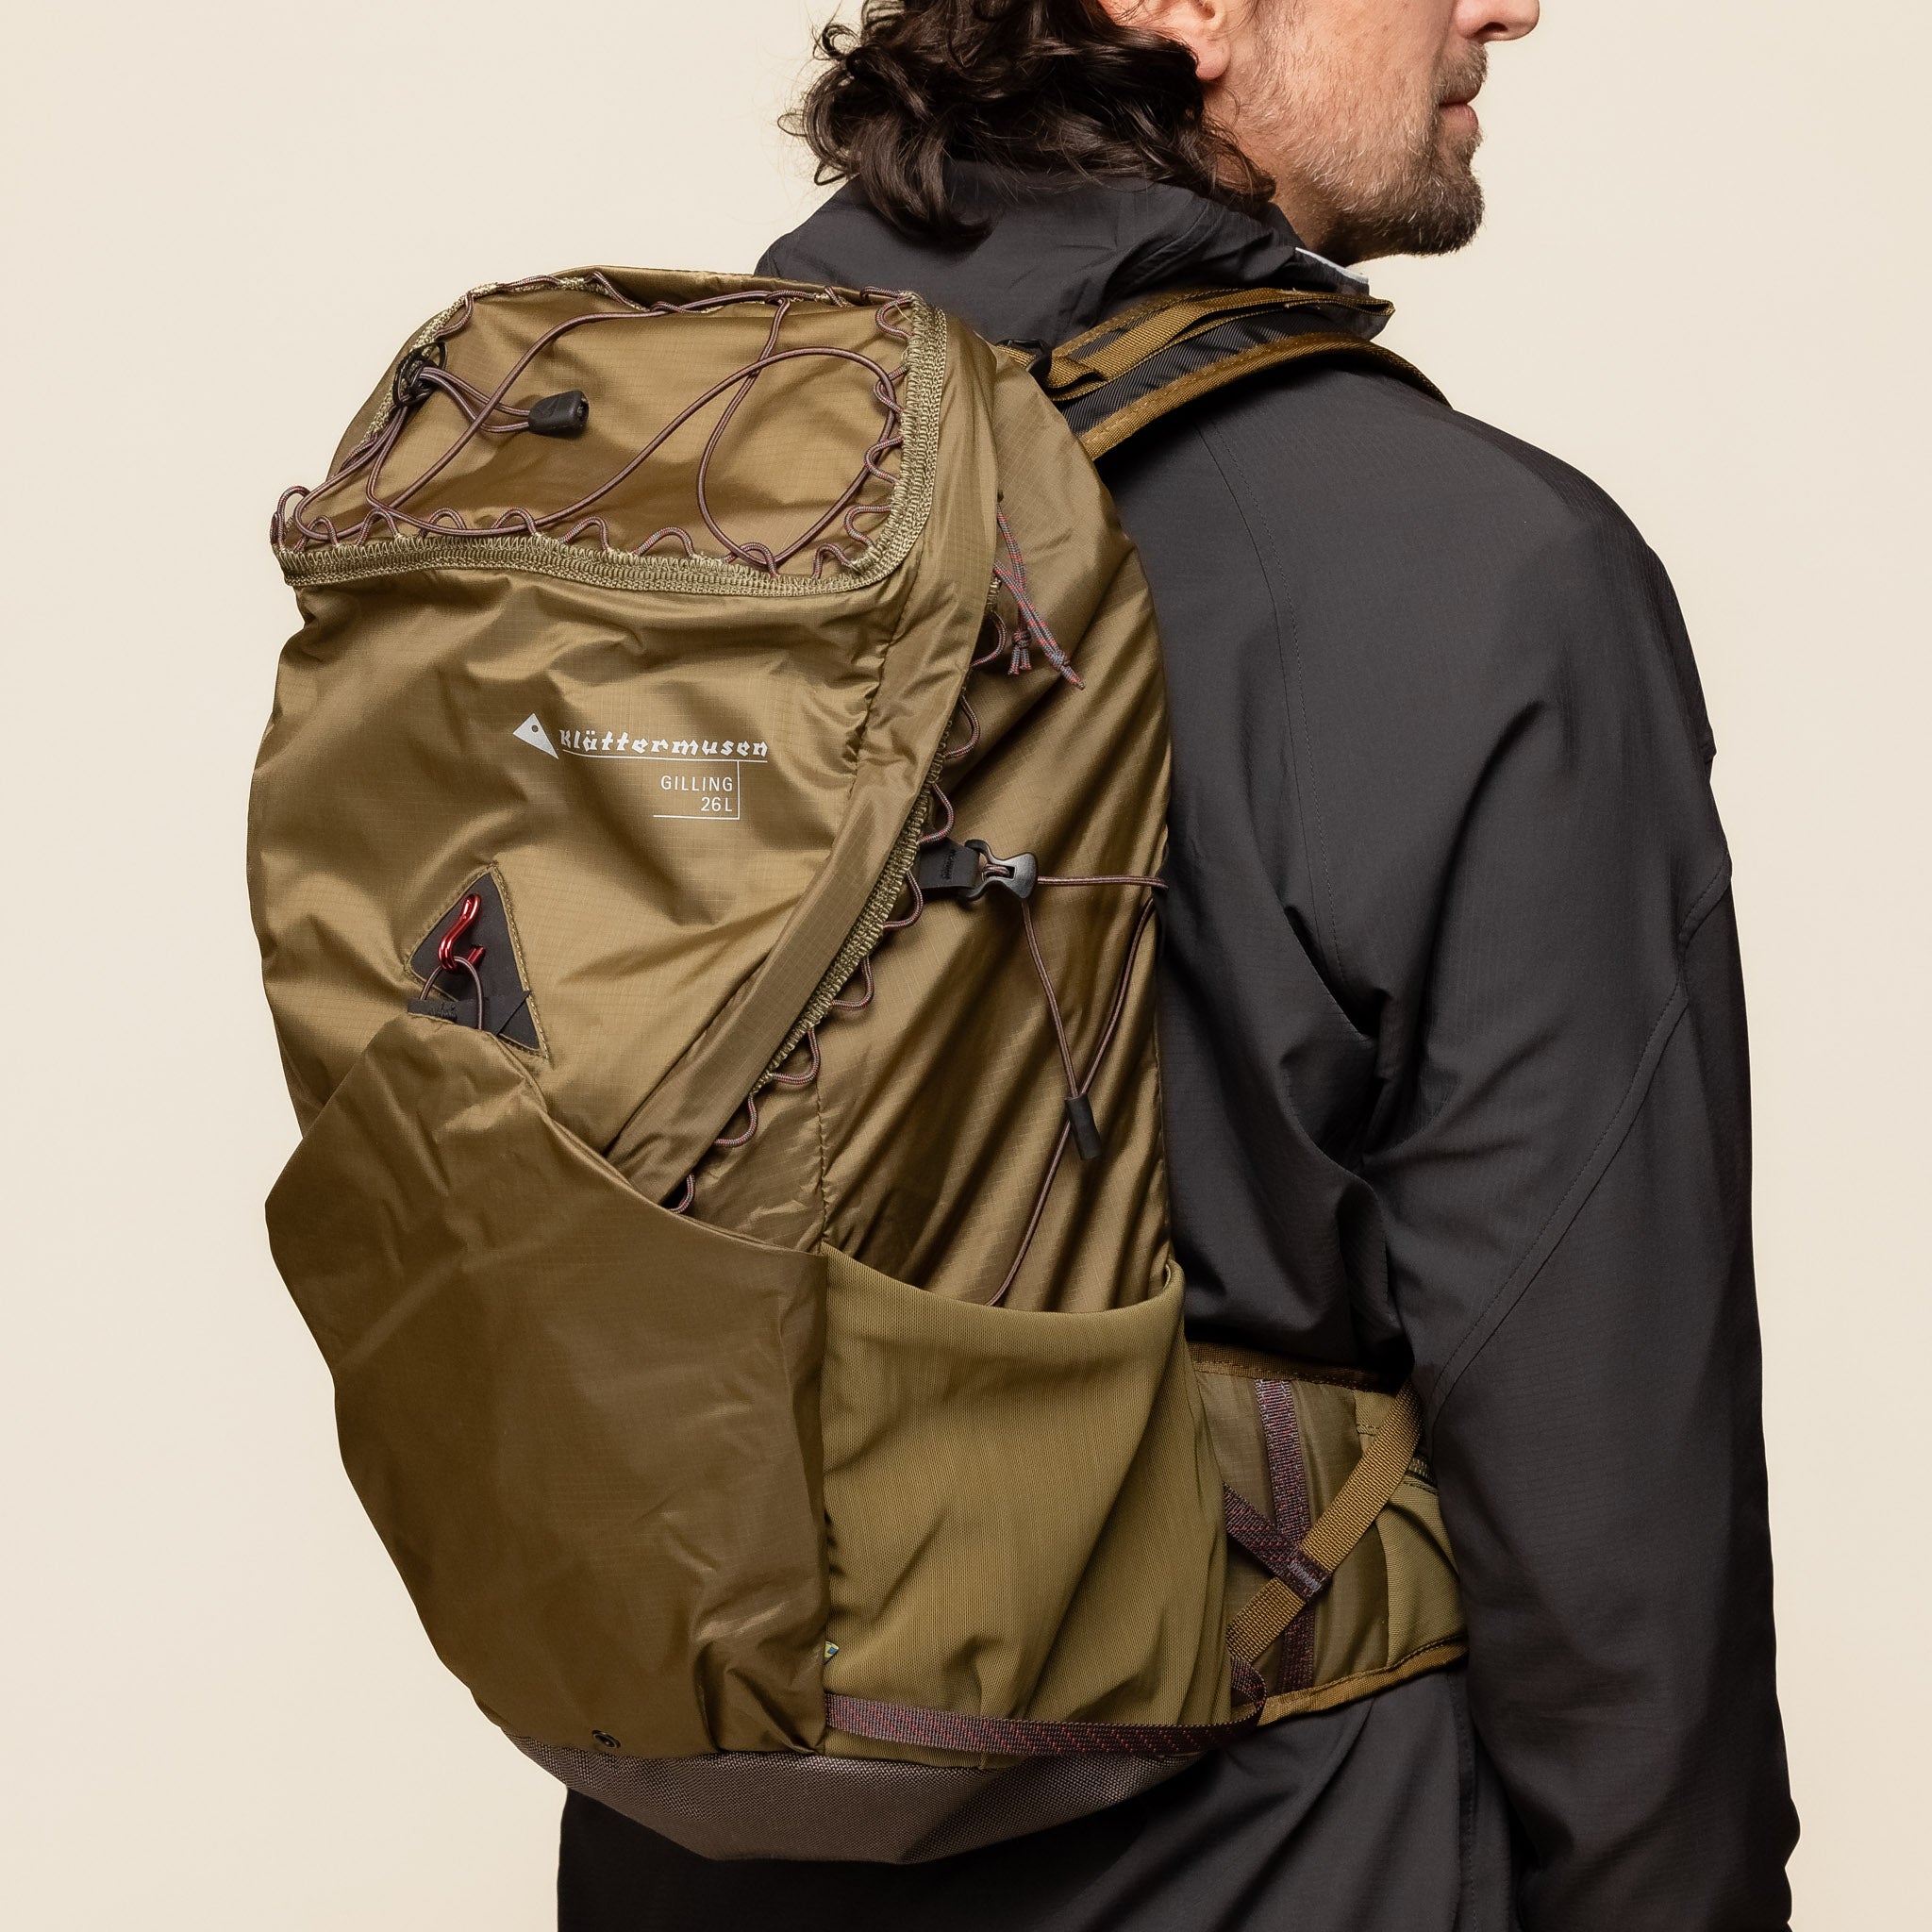 Klättermusen - Gilling Backpack 26L - Olive